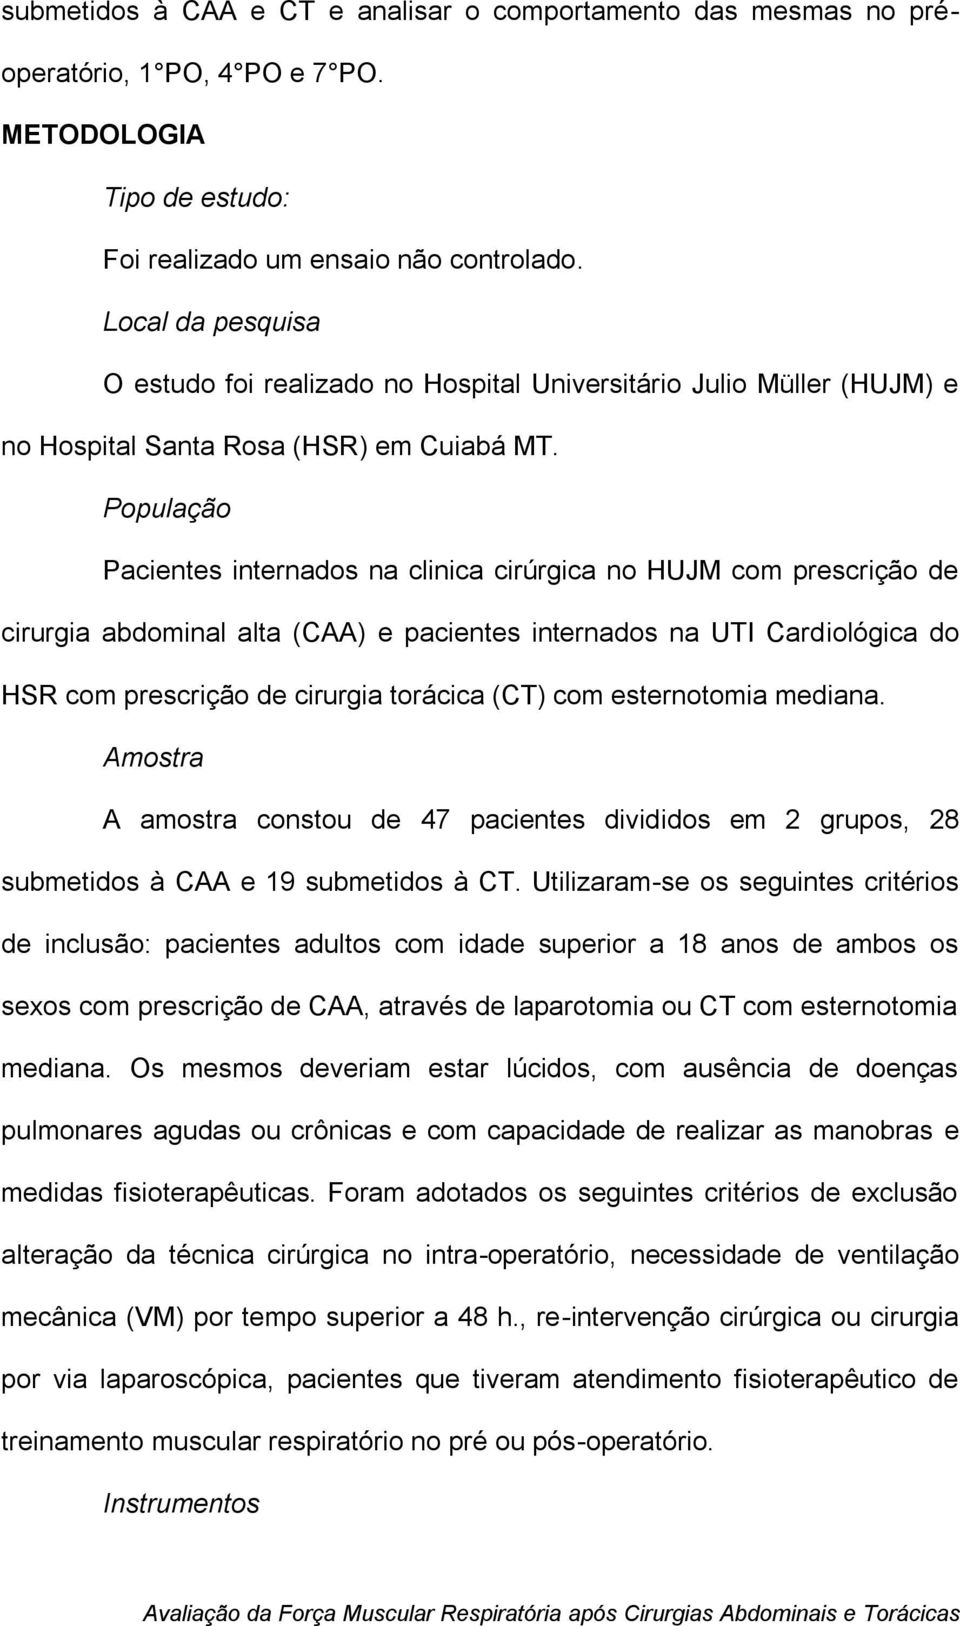 População Pacientes internados na clinica cirúrgica no HUJM com prescrição de cirurgia abdominal alta (CAA) e pacientes internados na UTI Cardiológica do HSR com prescrição de cirurgia torácica (CT)